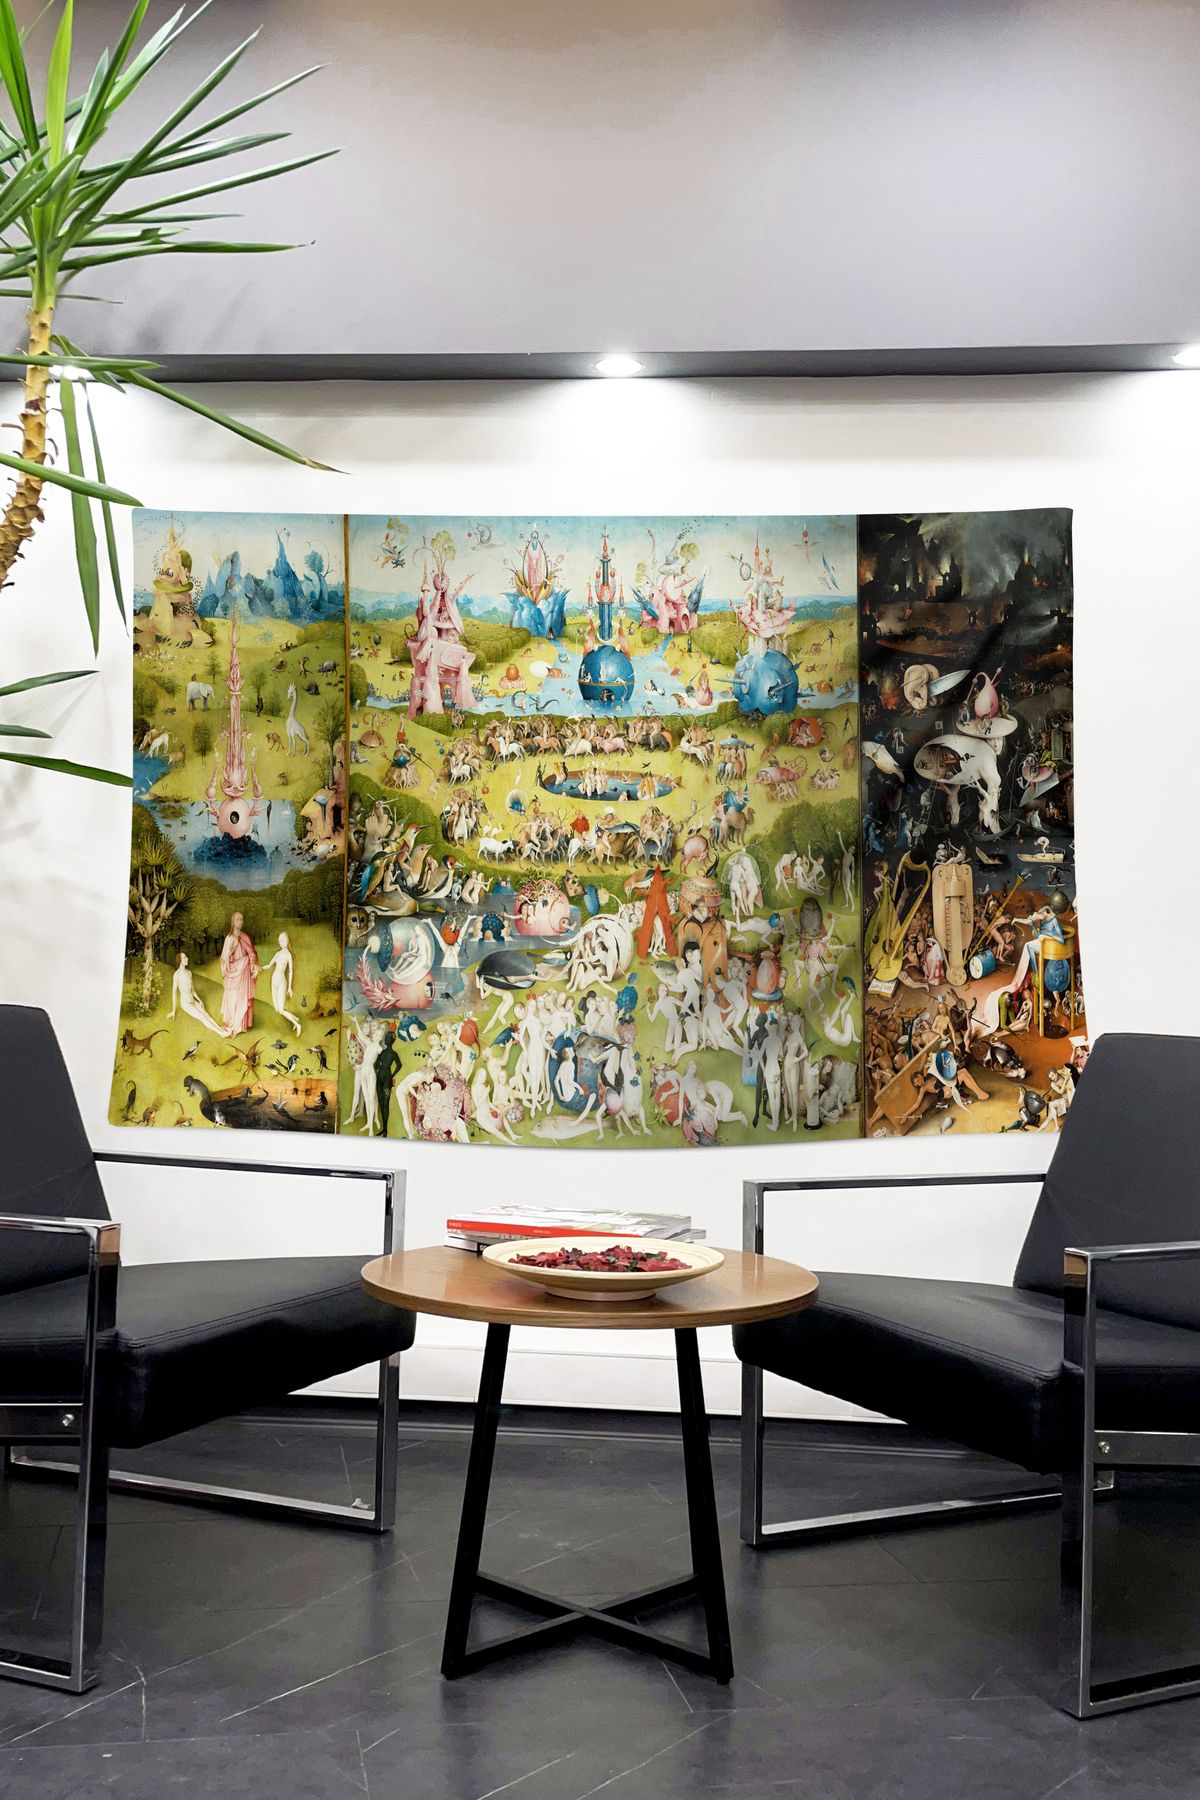 Dokumio Evinizi Sanatla Buluşturun " Bosch - Dünyevi Zevkler Bahçesi " Dokumio Kalitesiyle Duvar Örtüsü